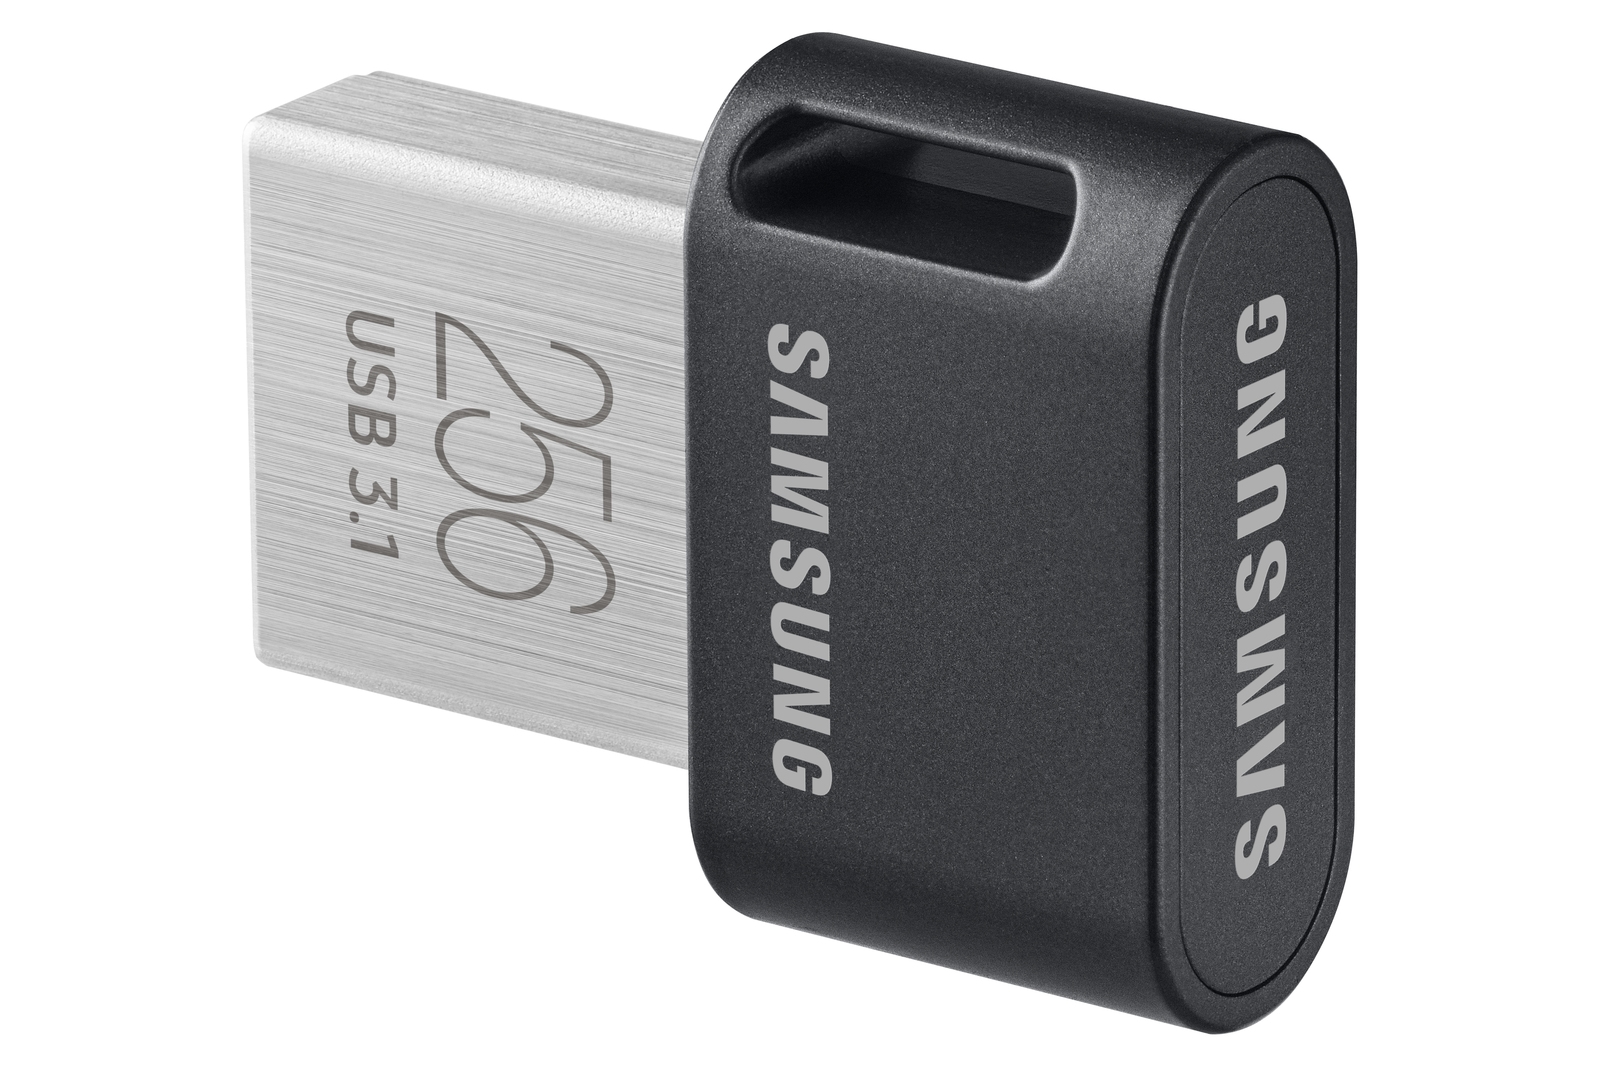 Stat Gør det godt støn USB 3.1 Flash Drive FIT Plus 256GB Memory & Storage - MUF-256AB/AM | Samsung  US